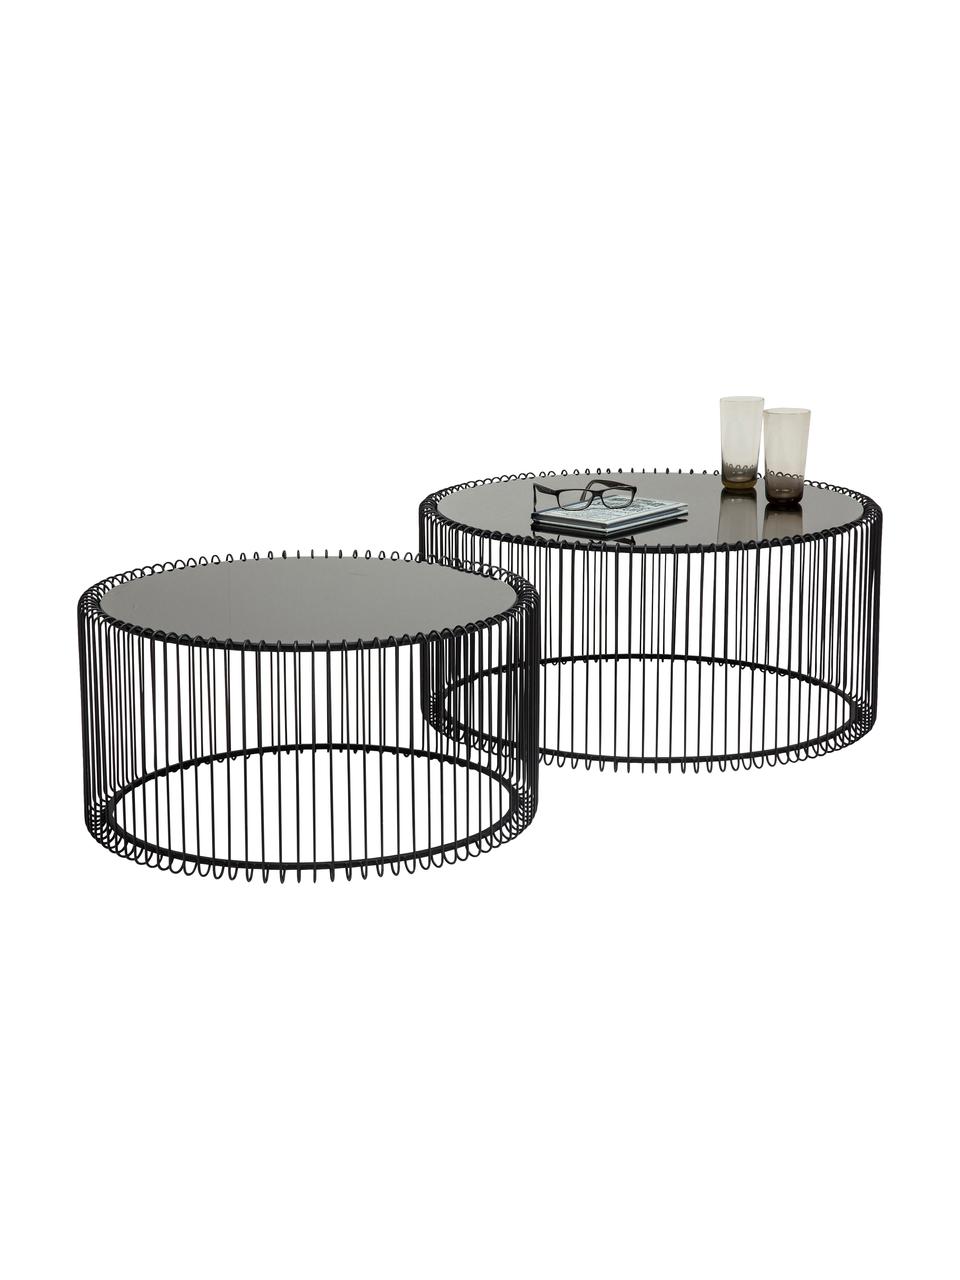 Couchtisch-Set Wire in Schwarz mit Glasplatte, 2-tlg., Gestell: Metall, pulverbeschichtet, Tischplatte: Sicherheitsglas, foliert, Schwarz, Set mit verschiedenen Größen